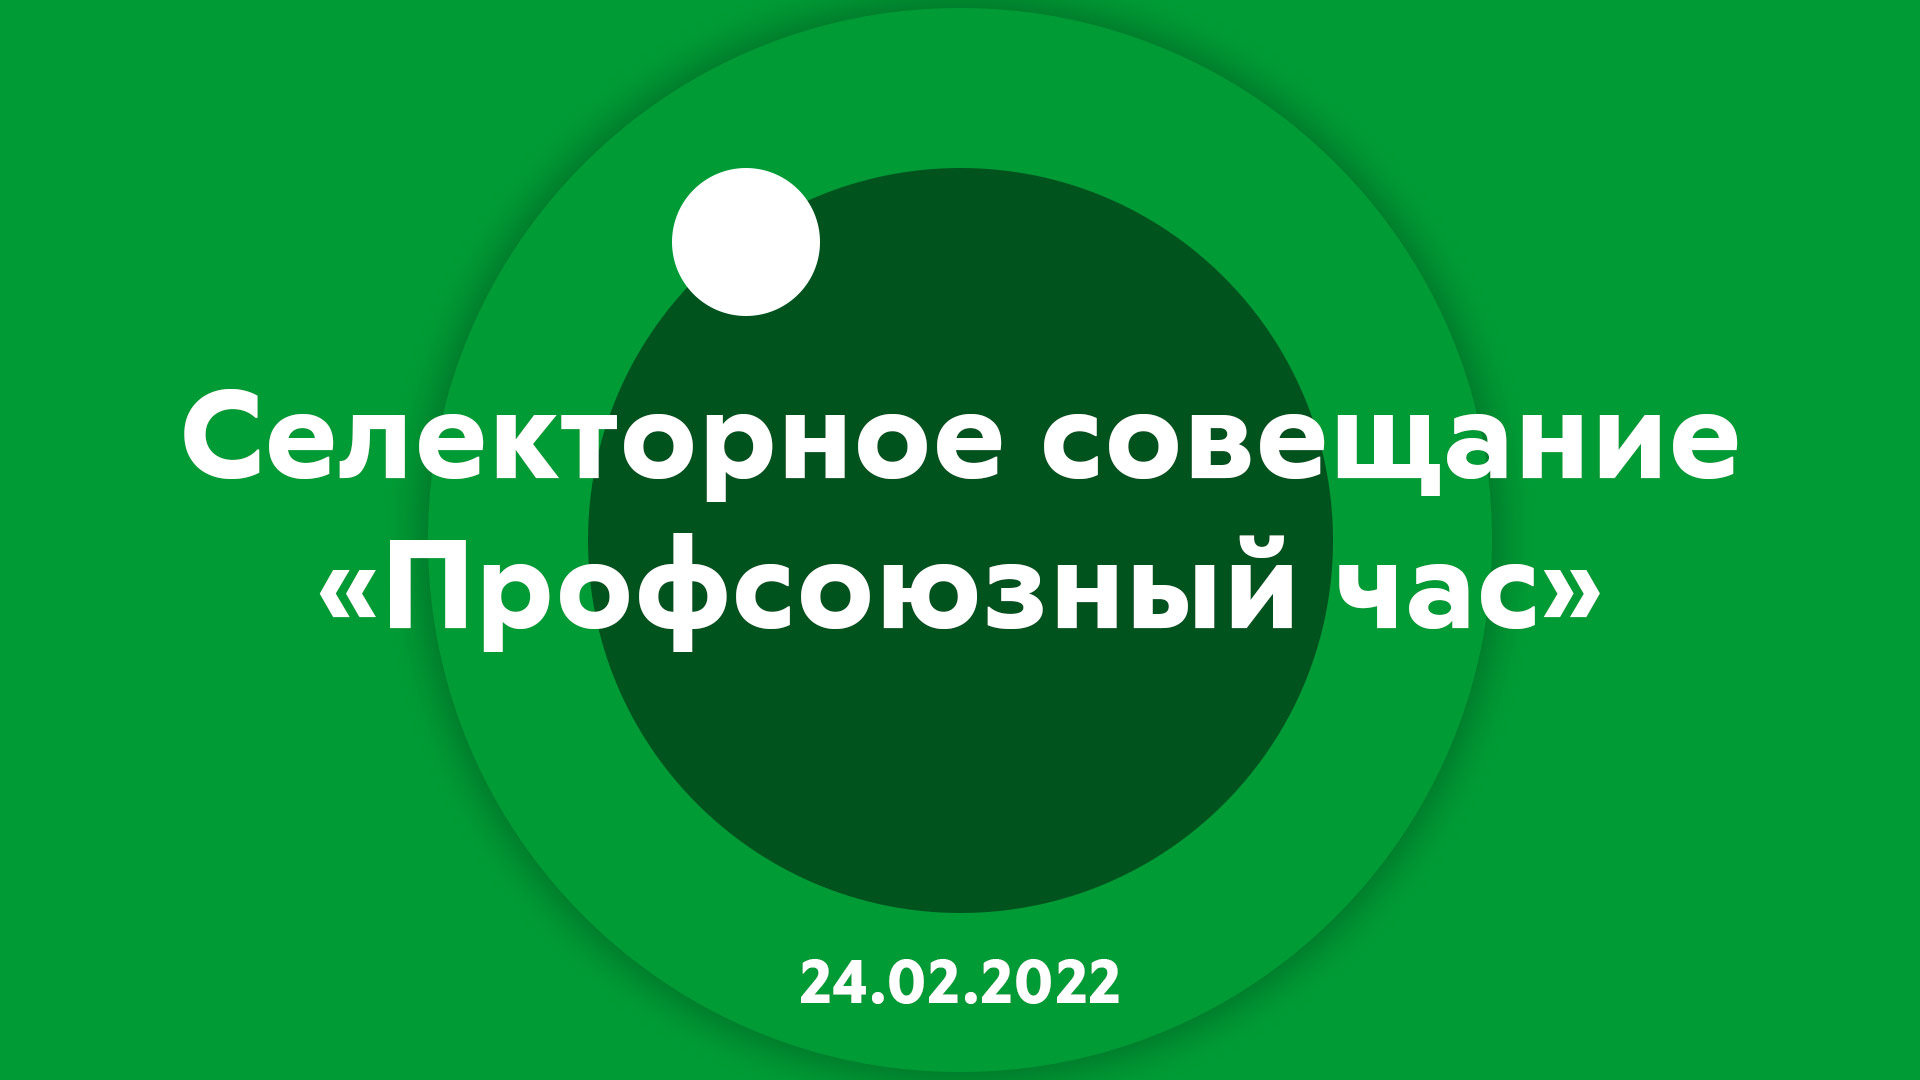 Селекторное совещание "Профсоюзный час" 24.02.2022